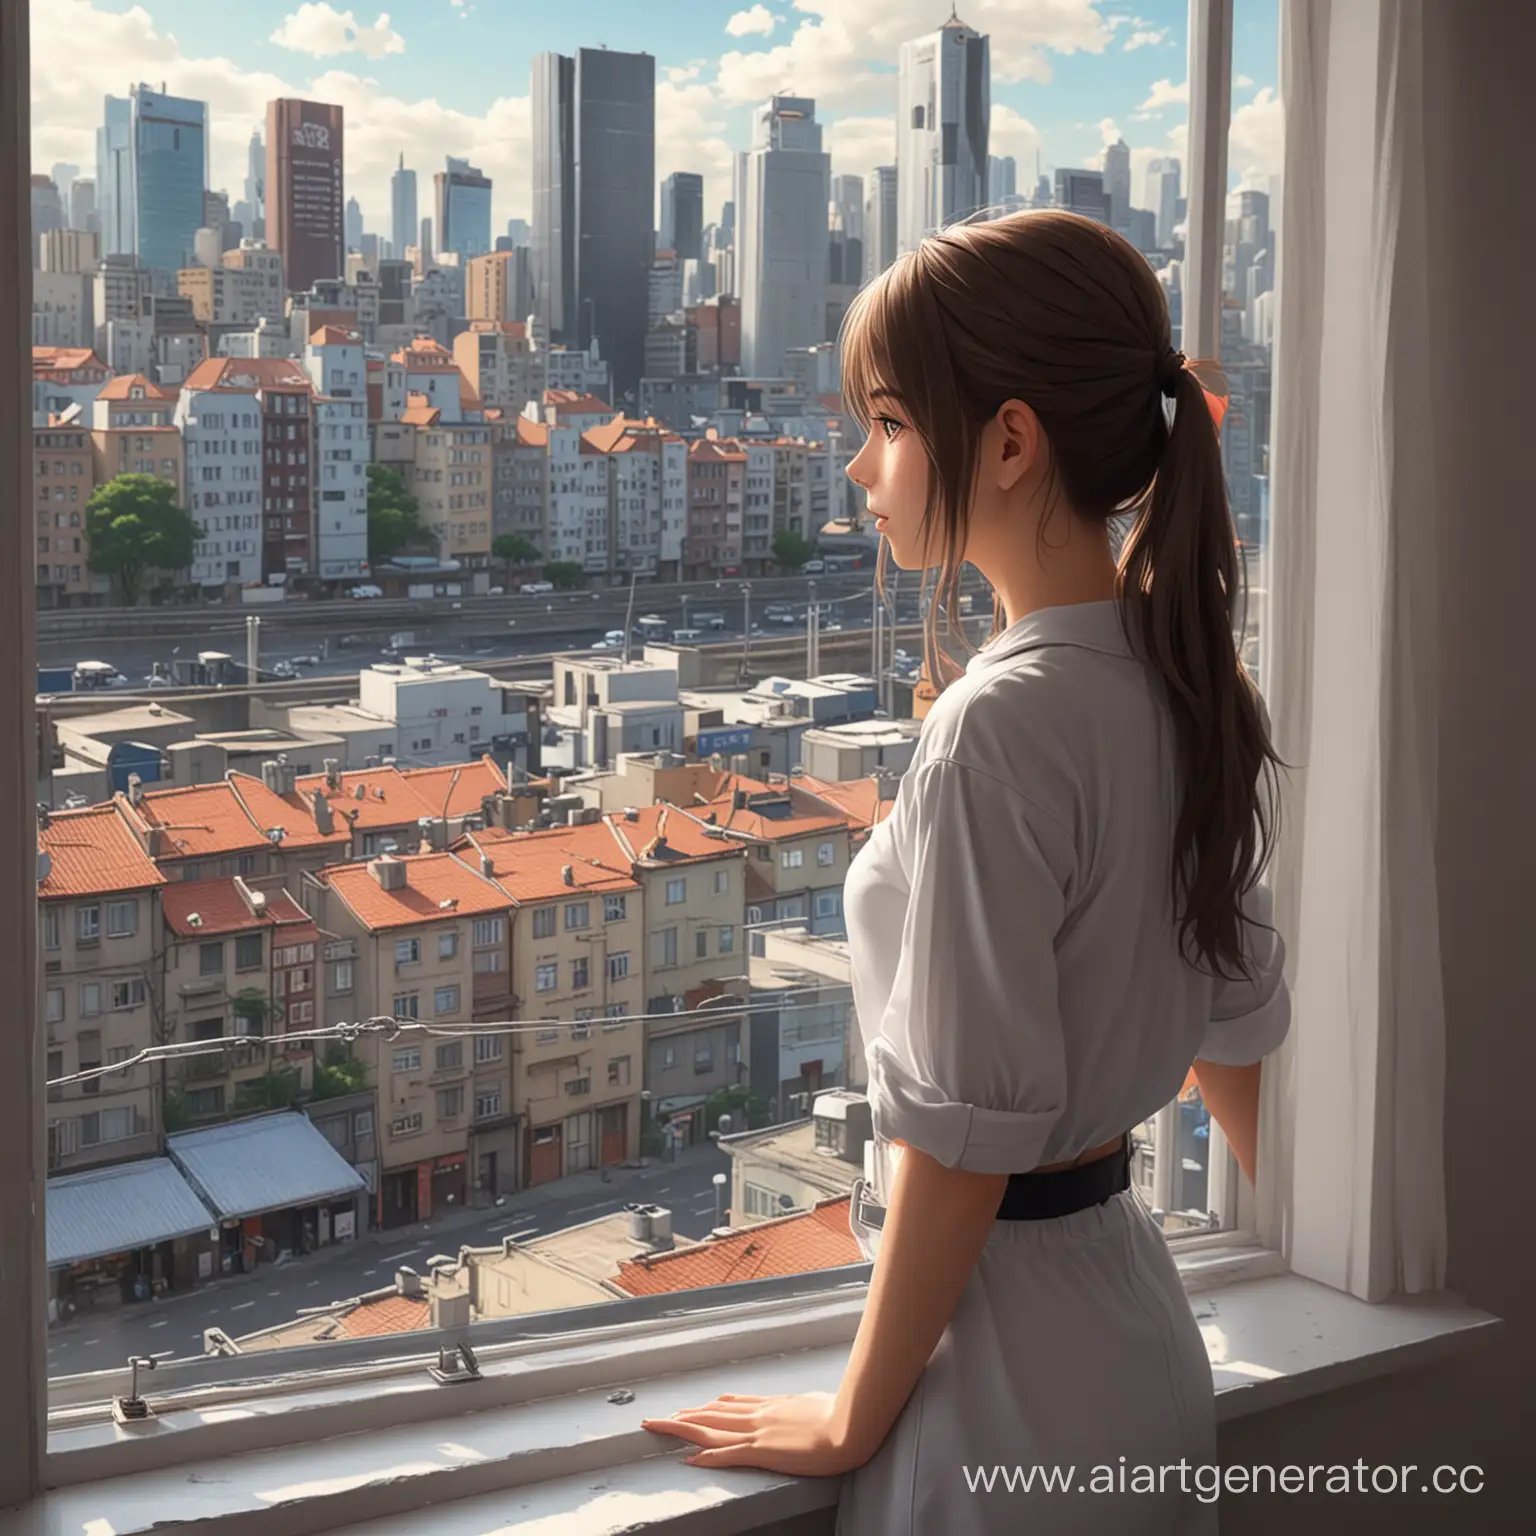 аниме-девушка смотрит в окно на фото-реалистичный город